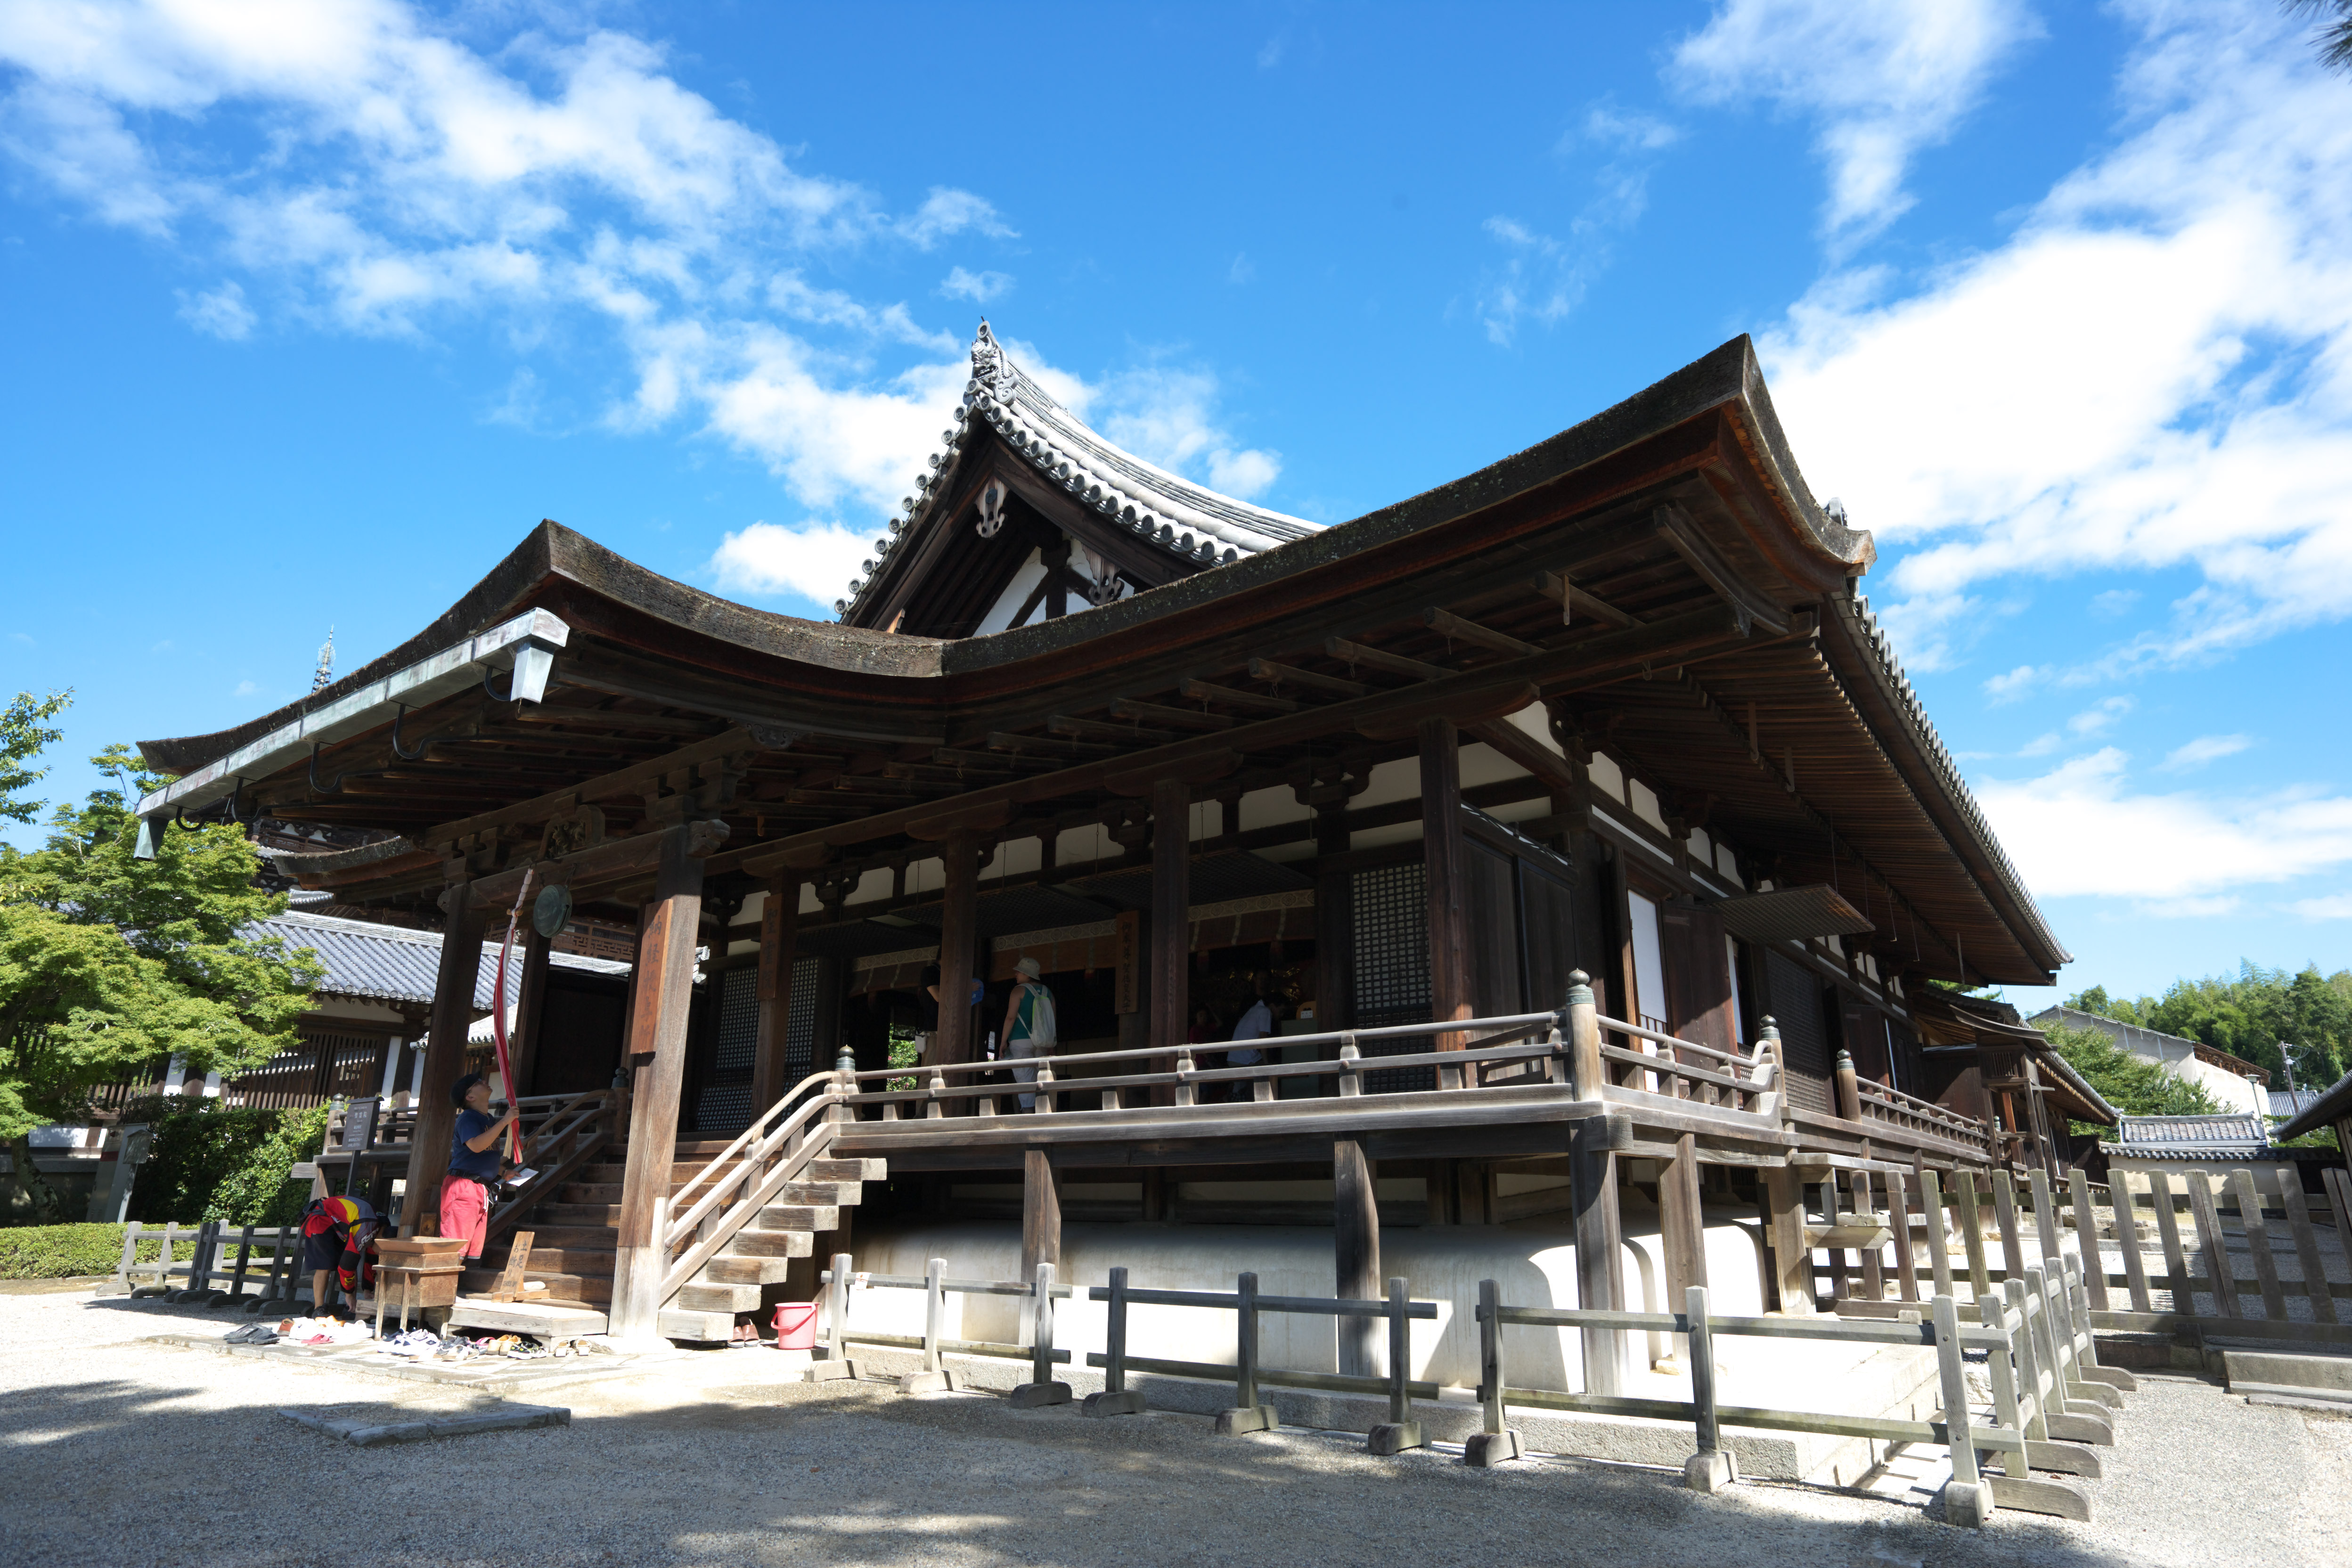 Foto, materiell, befreit, Landschaft, Bild, hat Foto auf Lager,Das Haus von Horyu-ji Temple Geist einer toten Person, Buddhismus, Skulptur, Fnf Storeyed-Pagode, Ein innerer Tempel